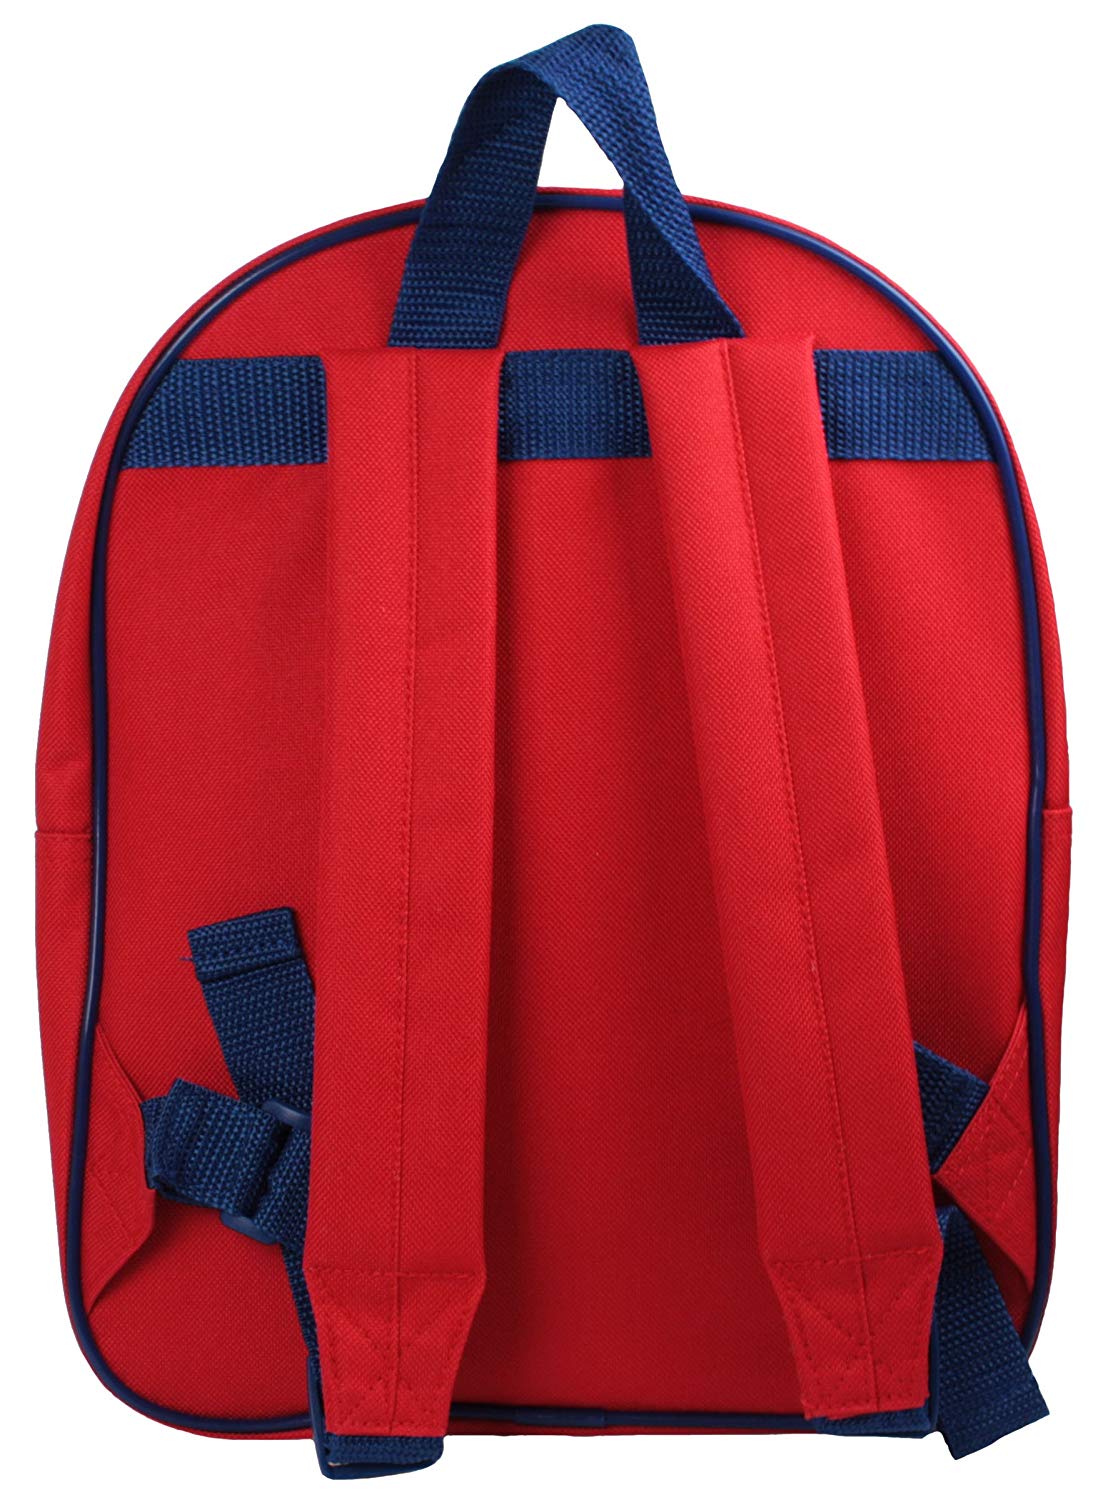 Pj Masks Eva 3d School Bag Rucksack Backpack